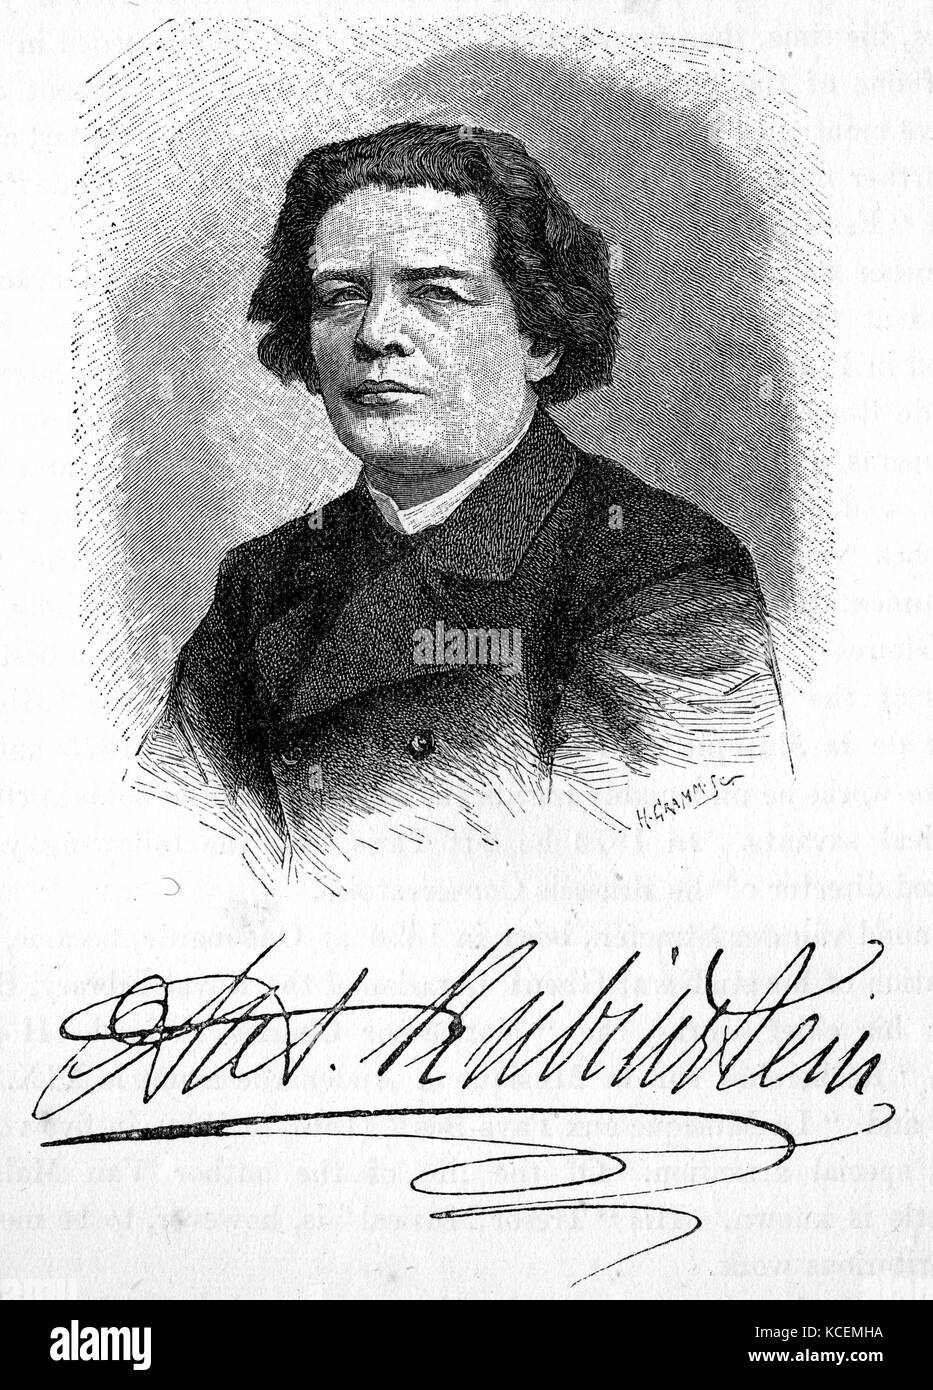 Anton Grigorievitch Rubinstein (1829 - 1894) pianiste, compositeur et chef d'orchestre qui est devenu une figure essentielle dans la culture russe lorsqu'il fonde le Conservatoire de Saint-Pétersbourg. Banque D'Images